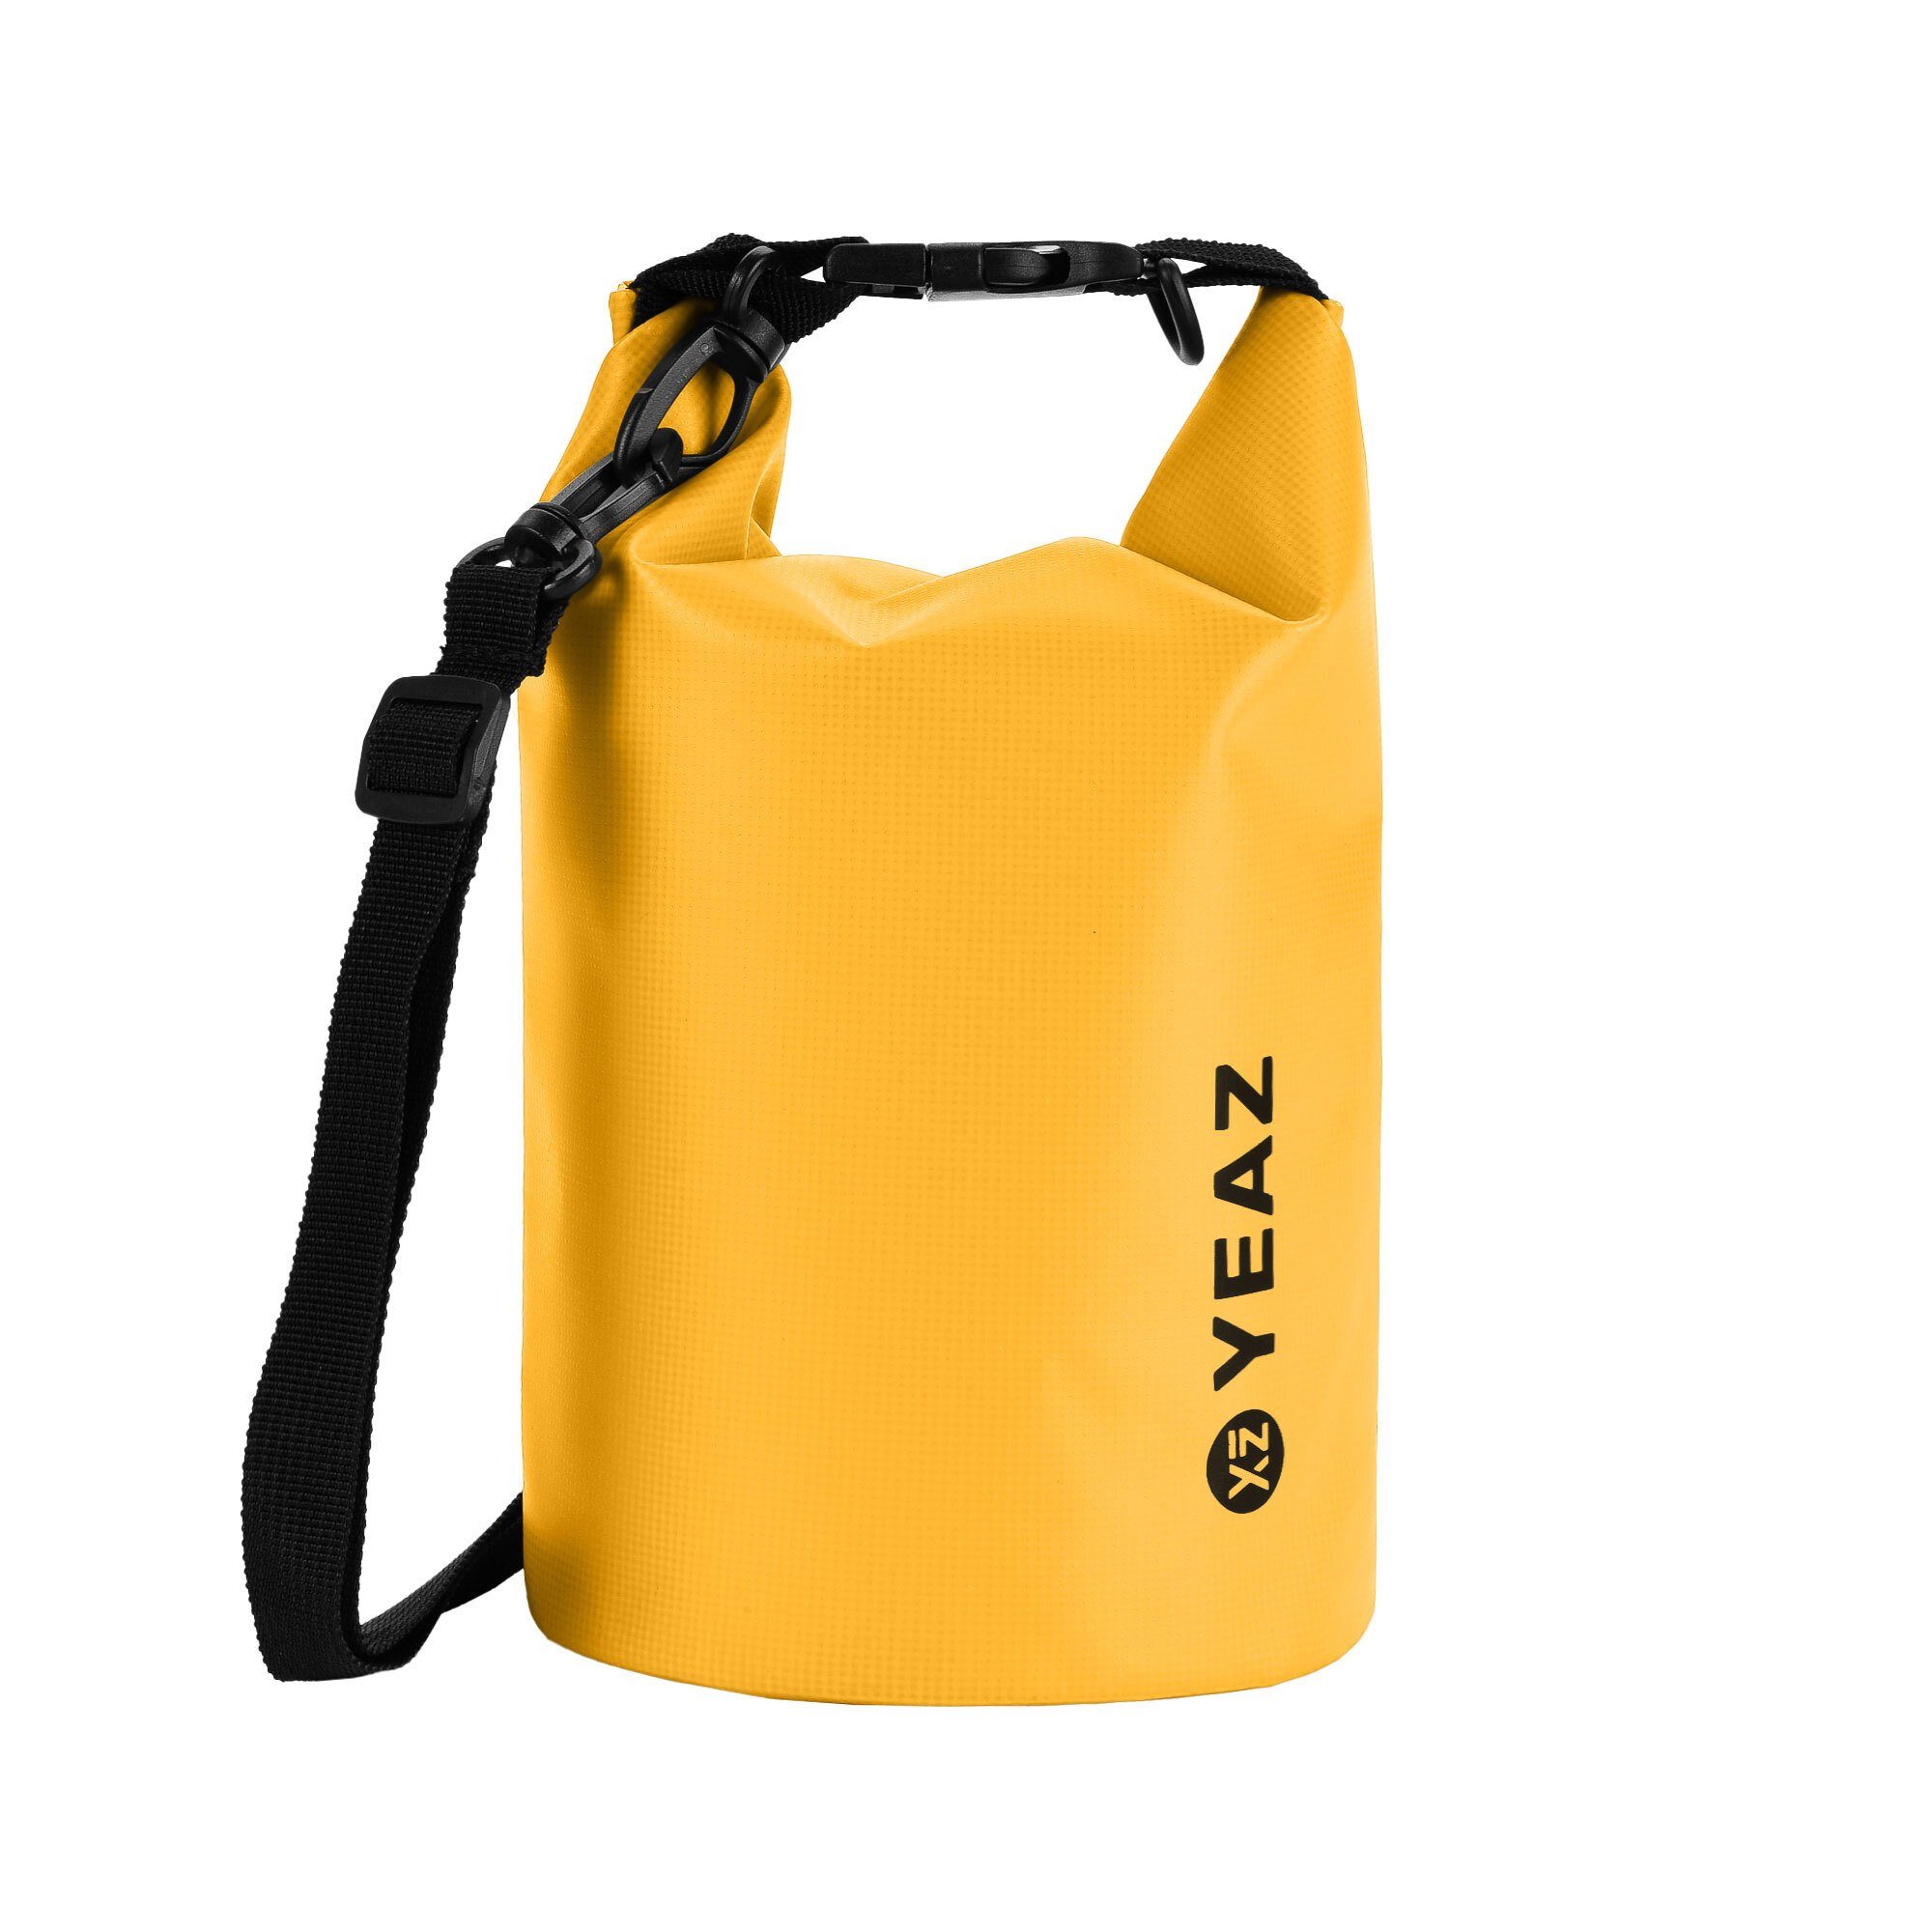 YEAZ Drybag ISAR wasserfester packsack 1,5l gelb